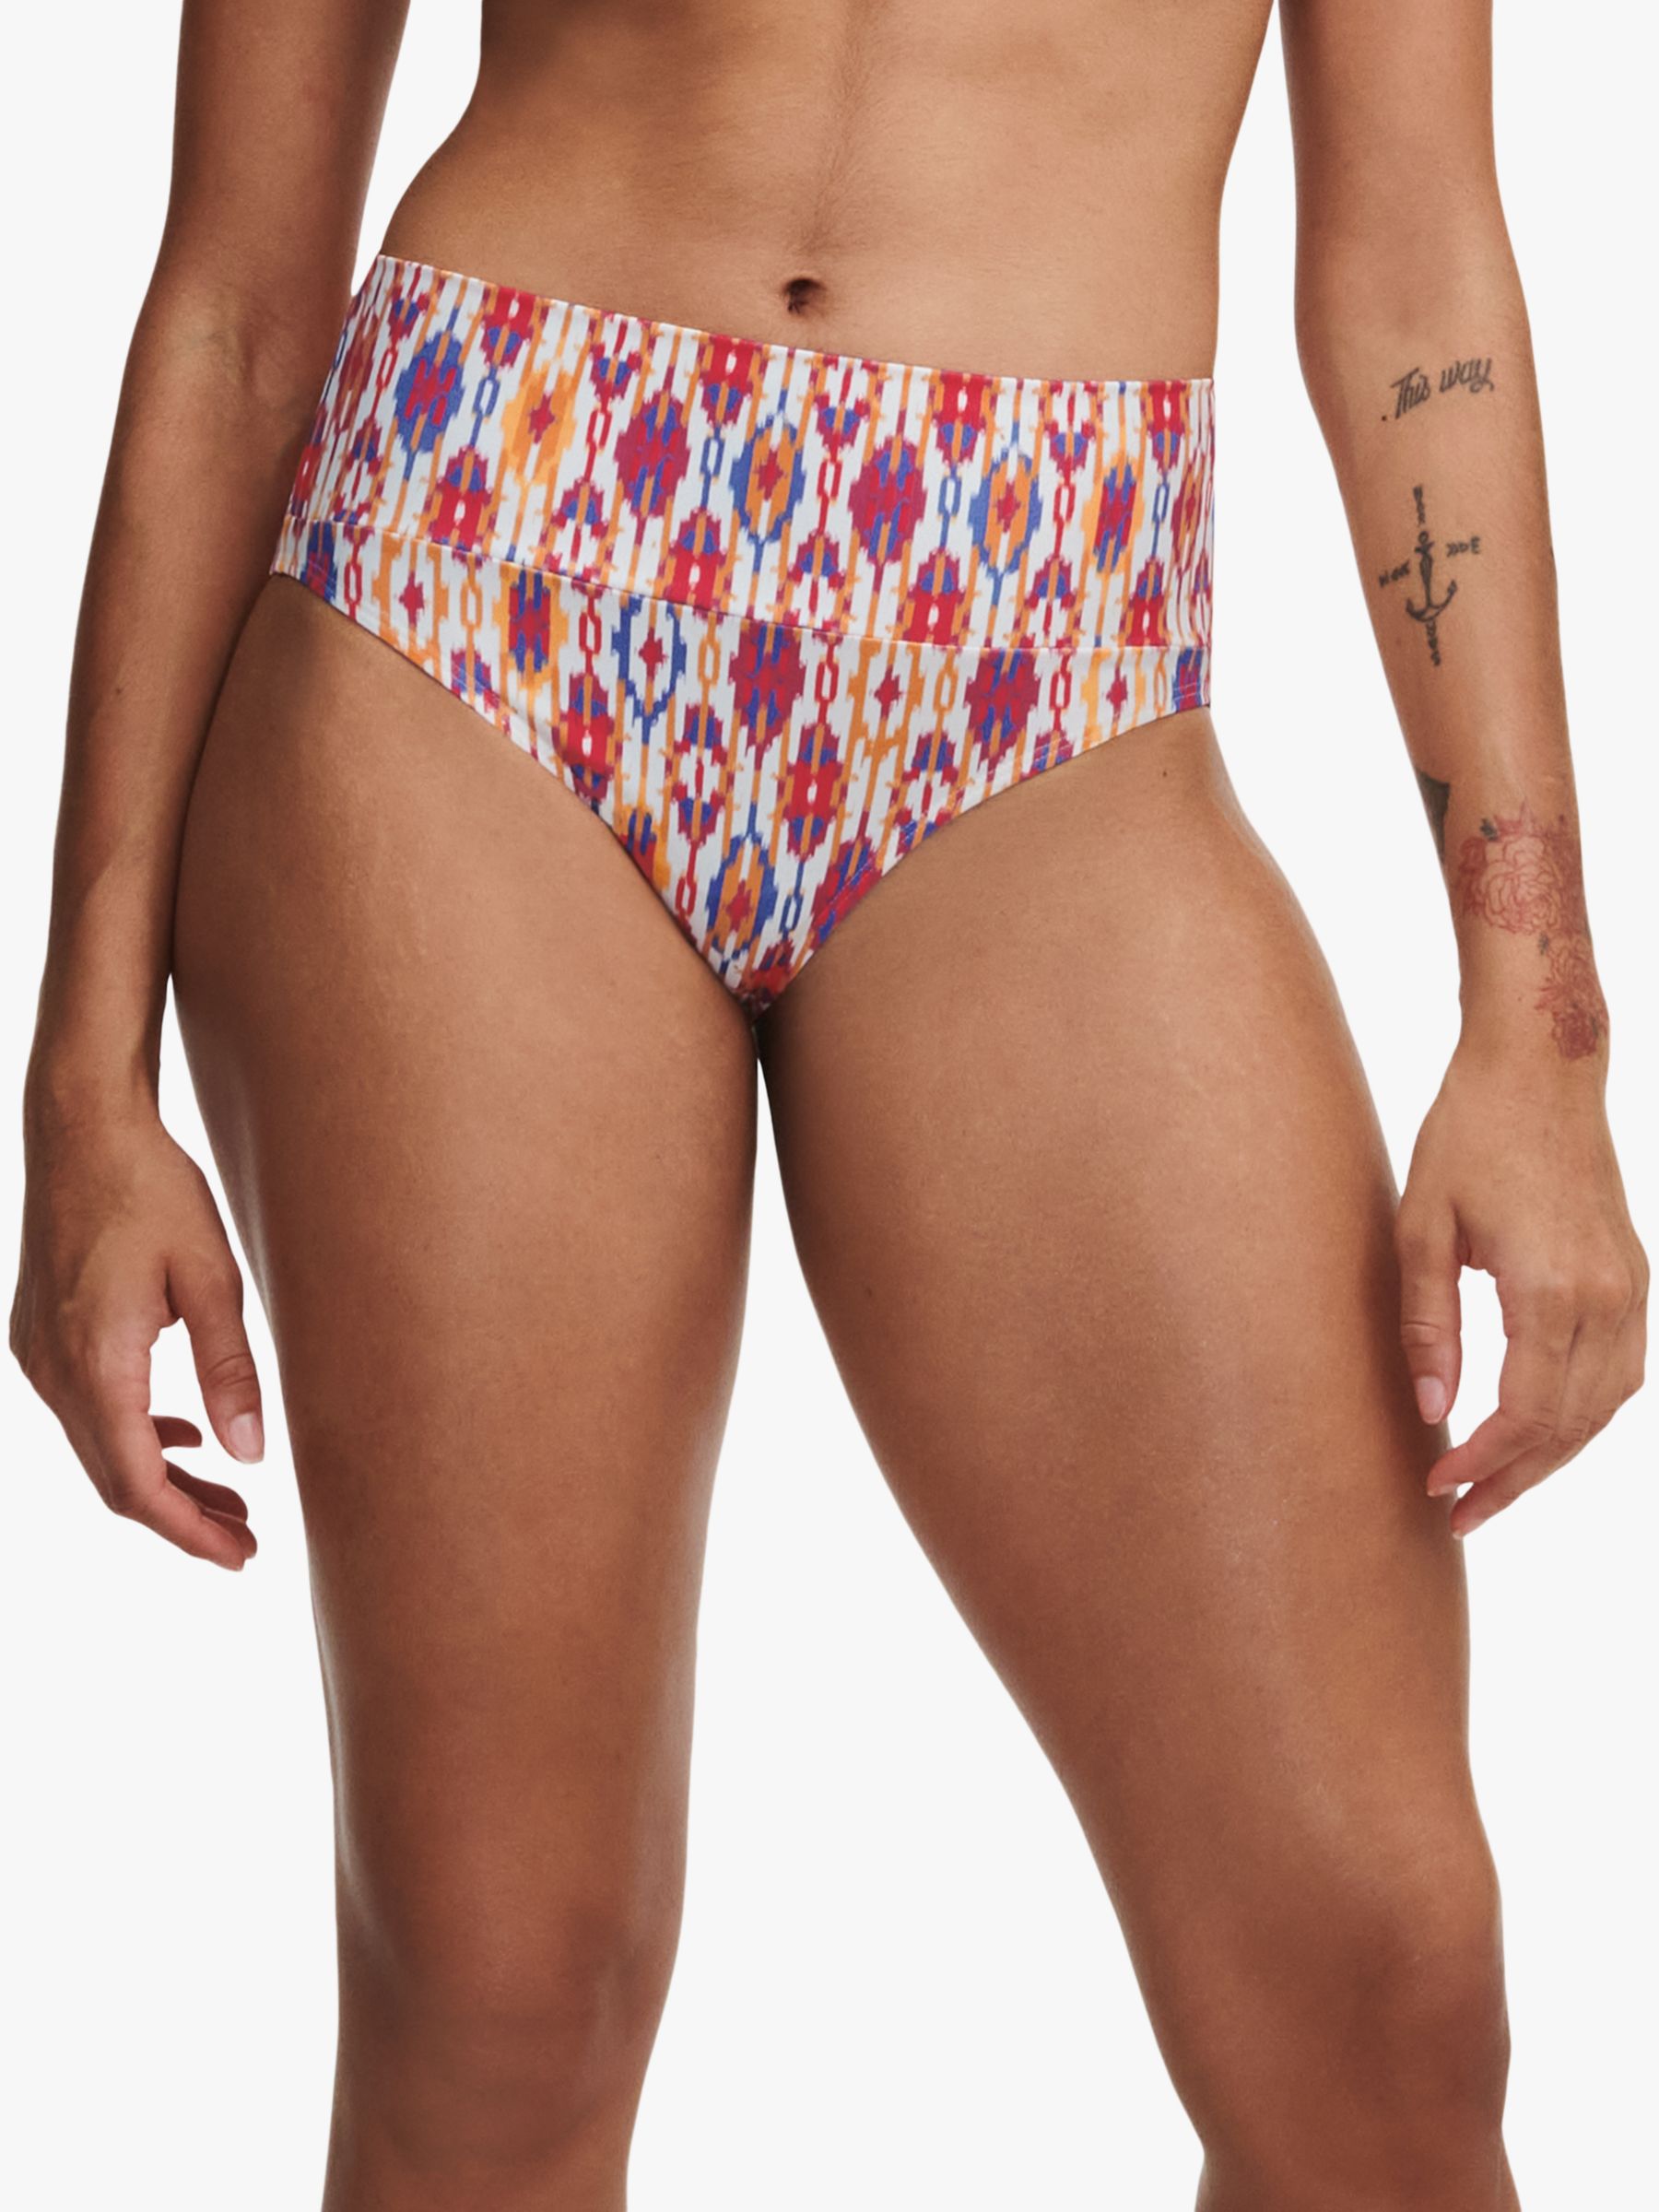 Chantelle Devotion Ikat Print Fold Down Bikini Bottoms, Red/Multi, S